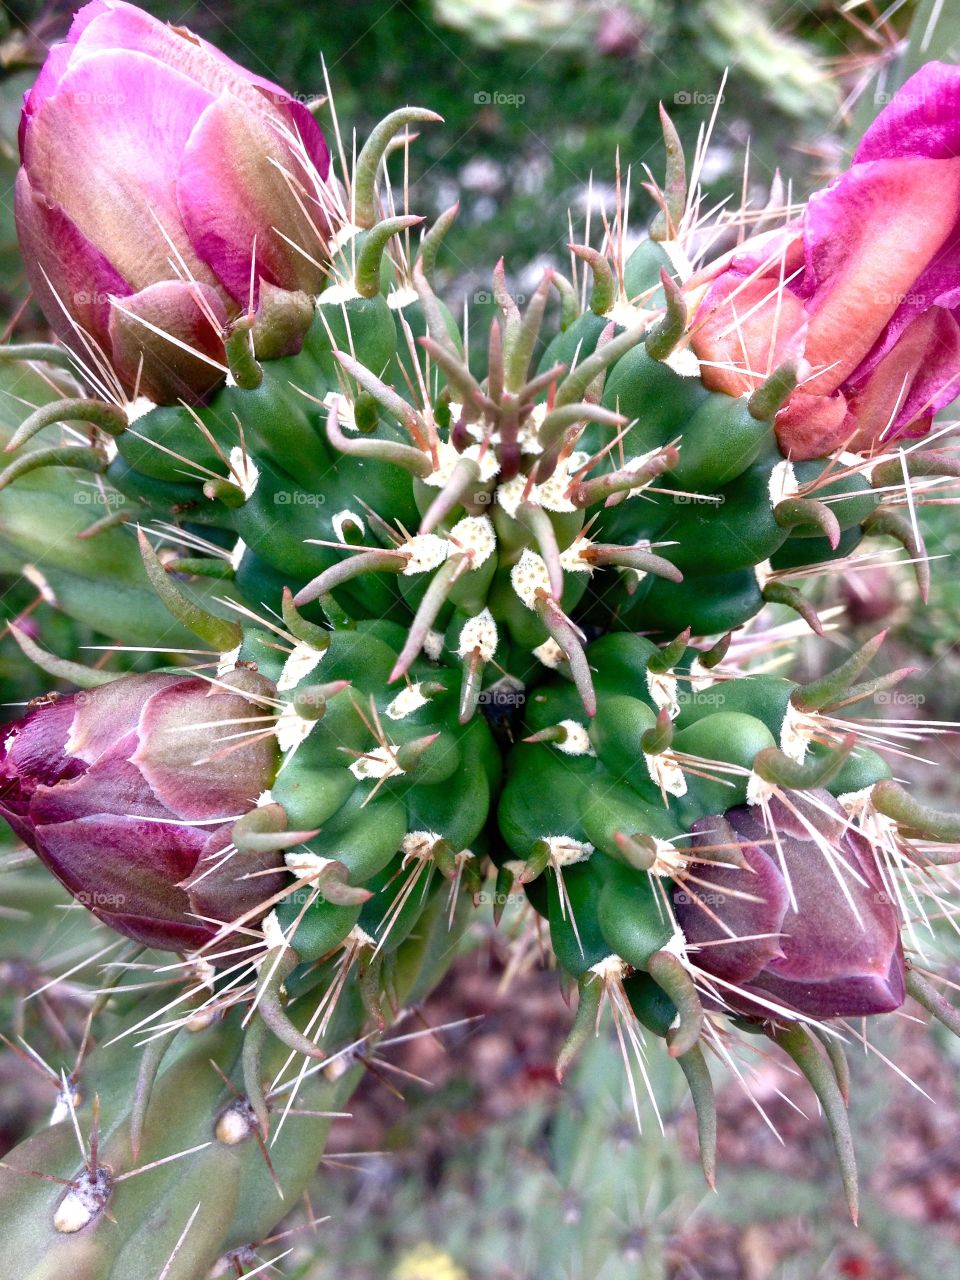 Blooming cactus. Cactus in bloom